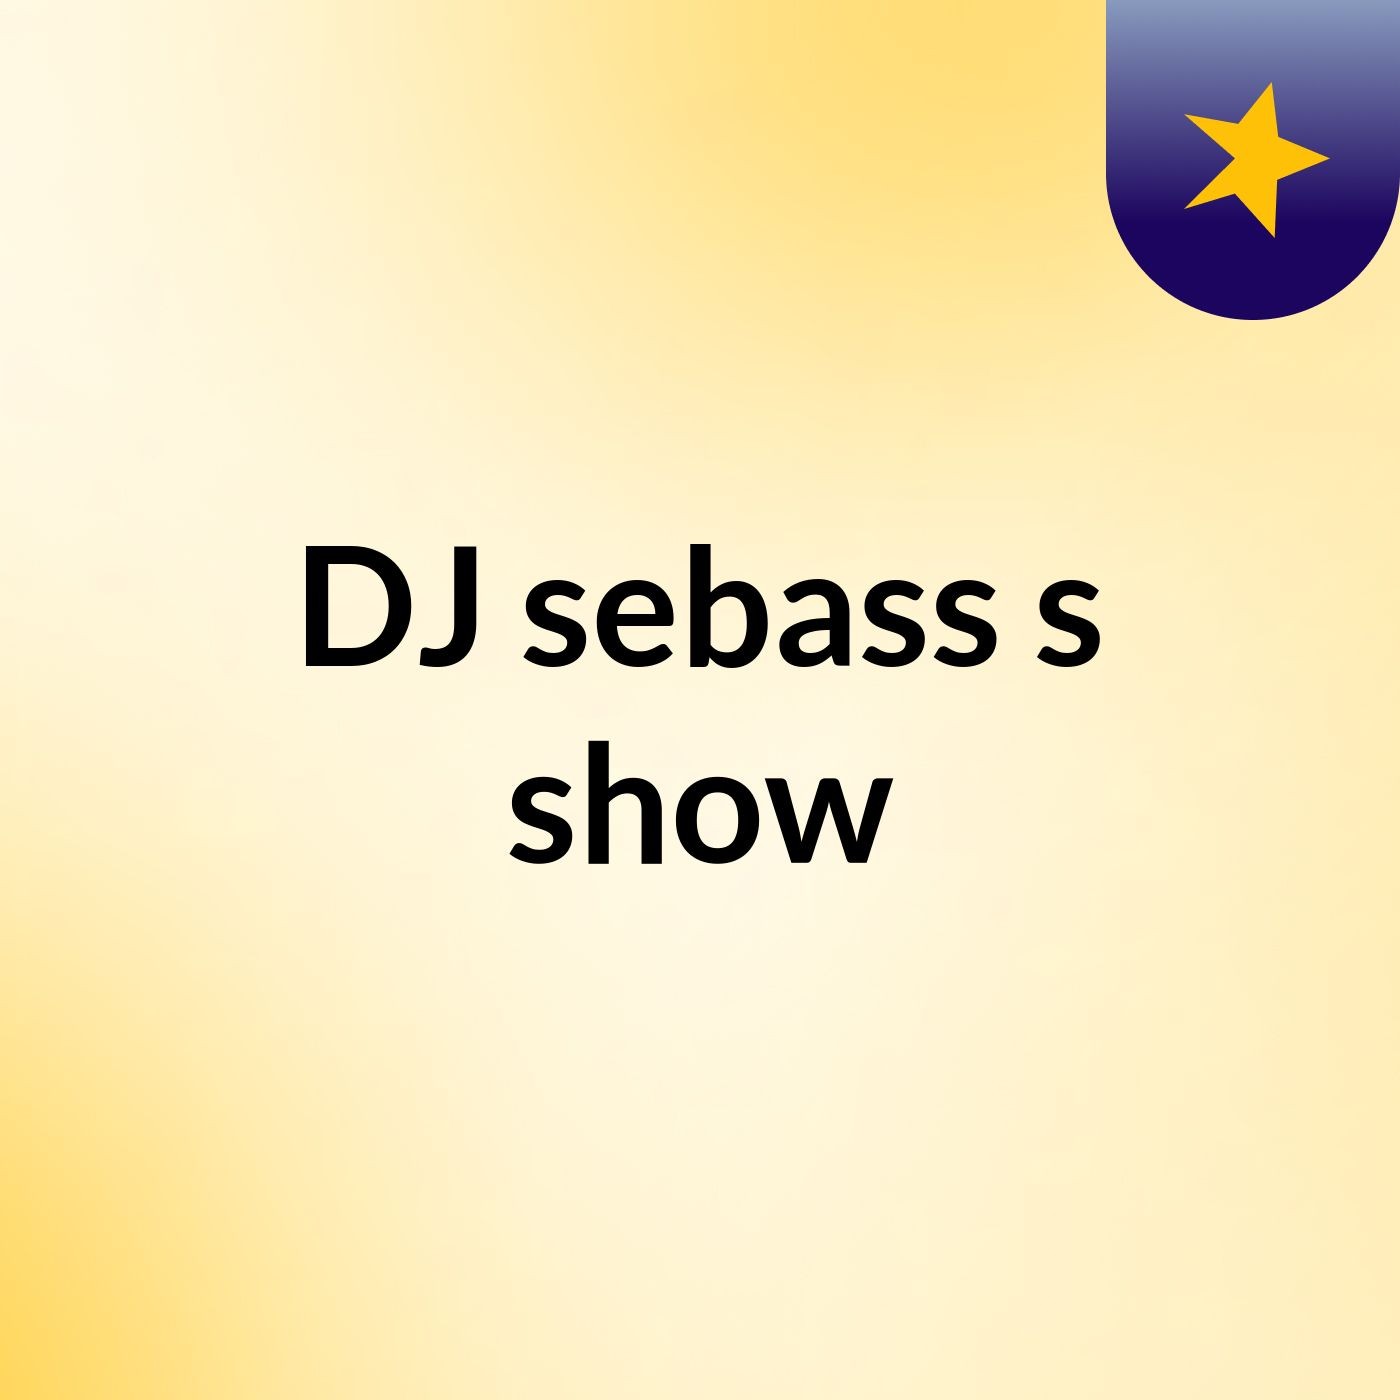 DJ sebass's show